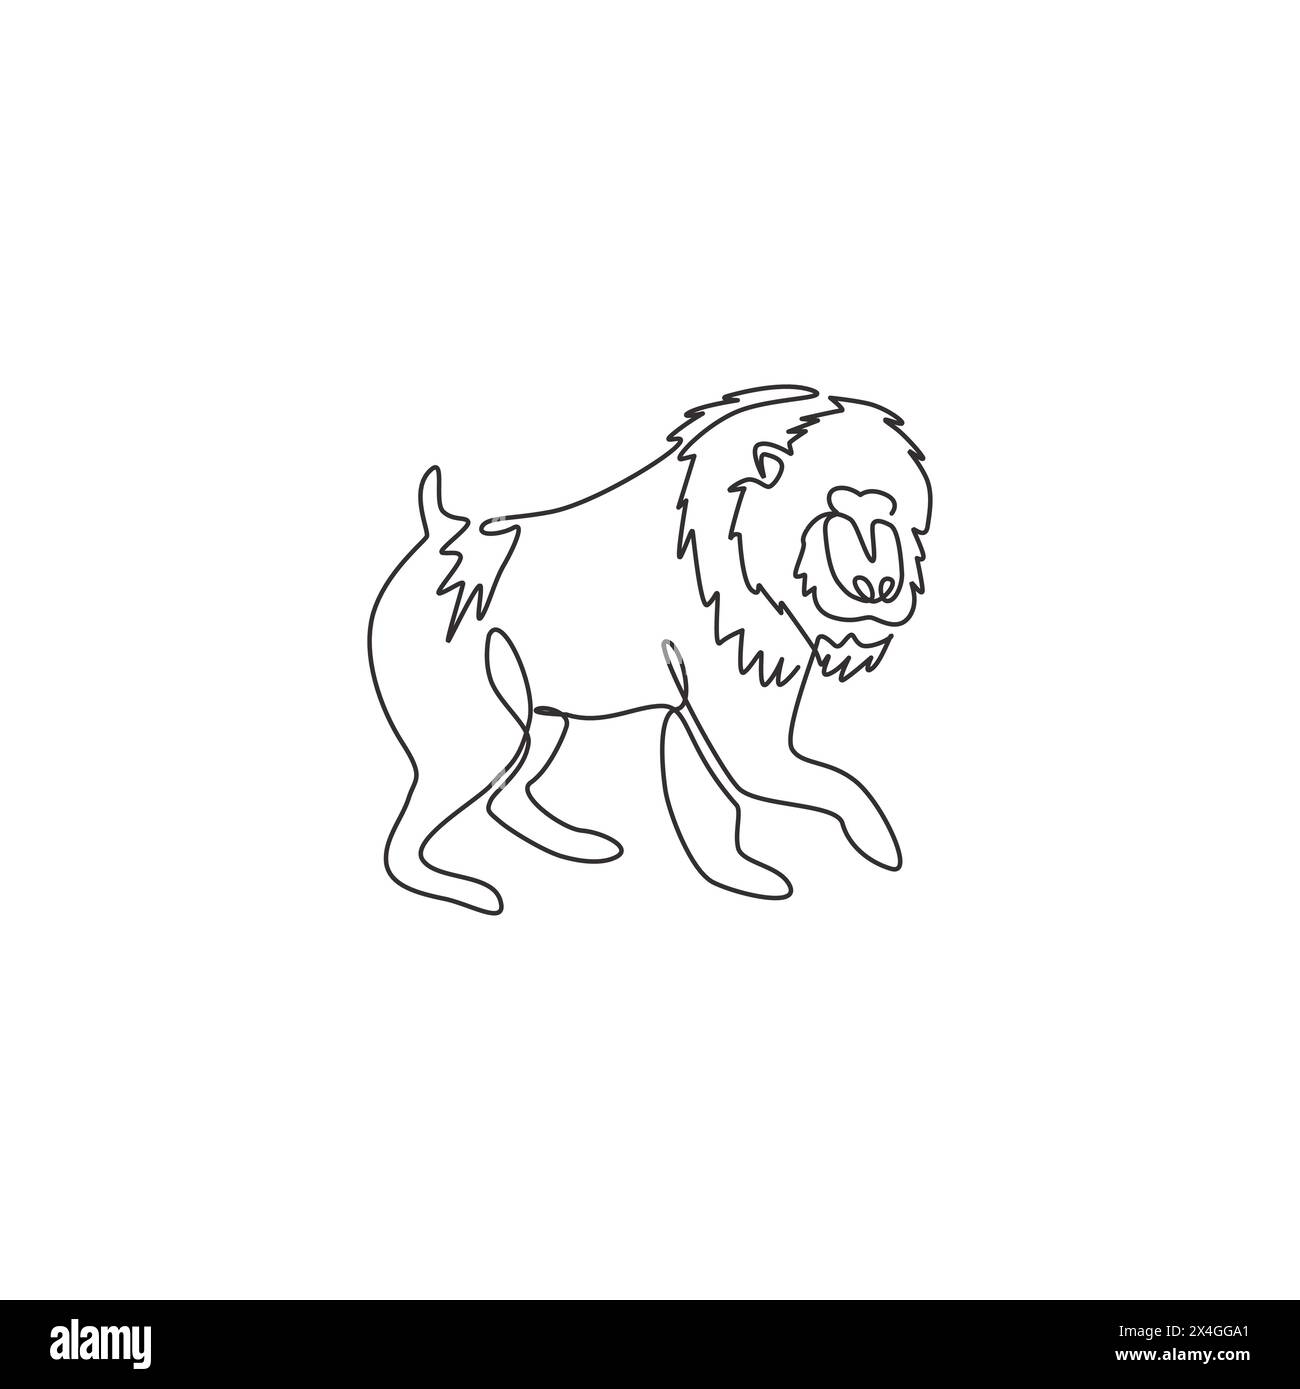 Un disegno a linea singola di adorabili mandriani per l'identità del logo aziendale. Concetto di mascotte di primate di grande bellezza per l'icona del parco nazionale di conservazione. Moderno Illustrazione Vettoriale